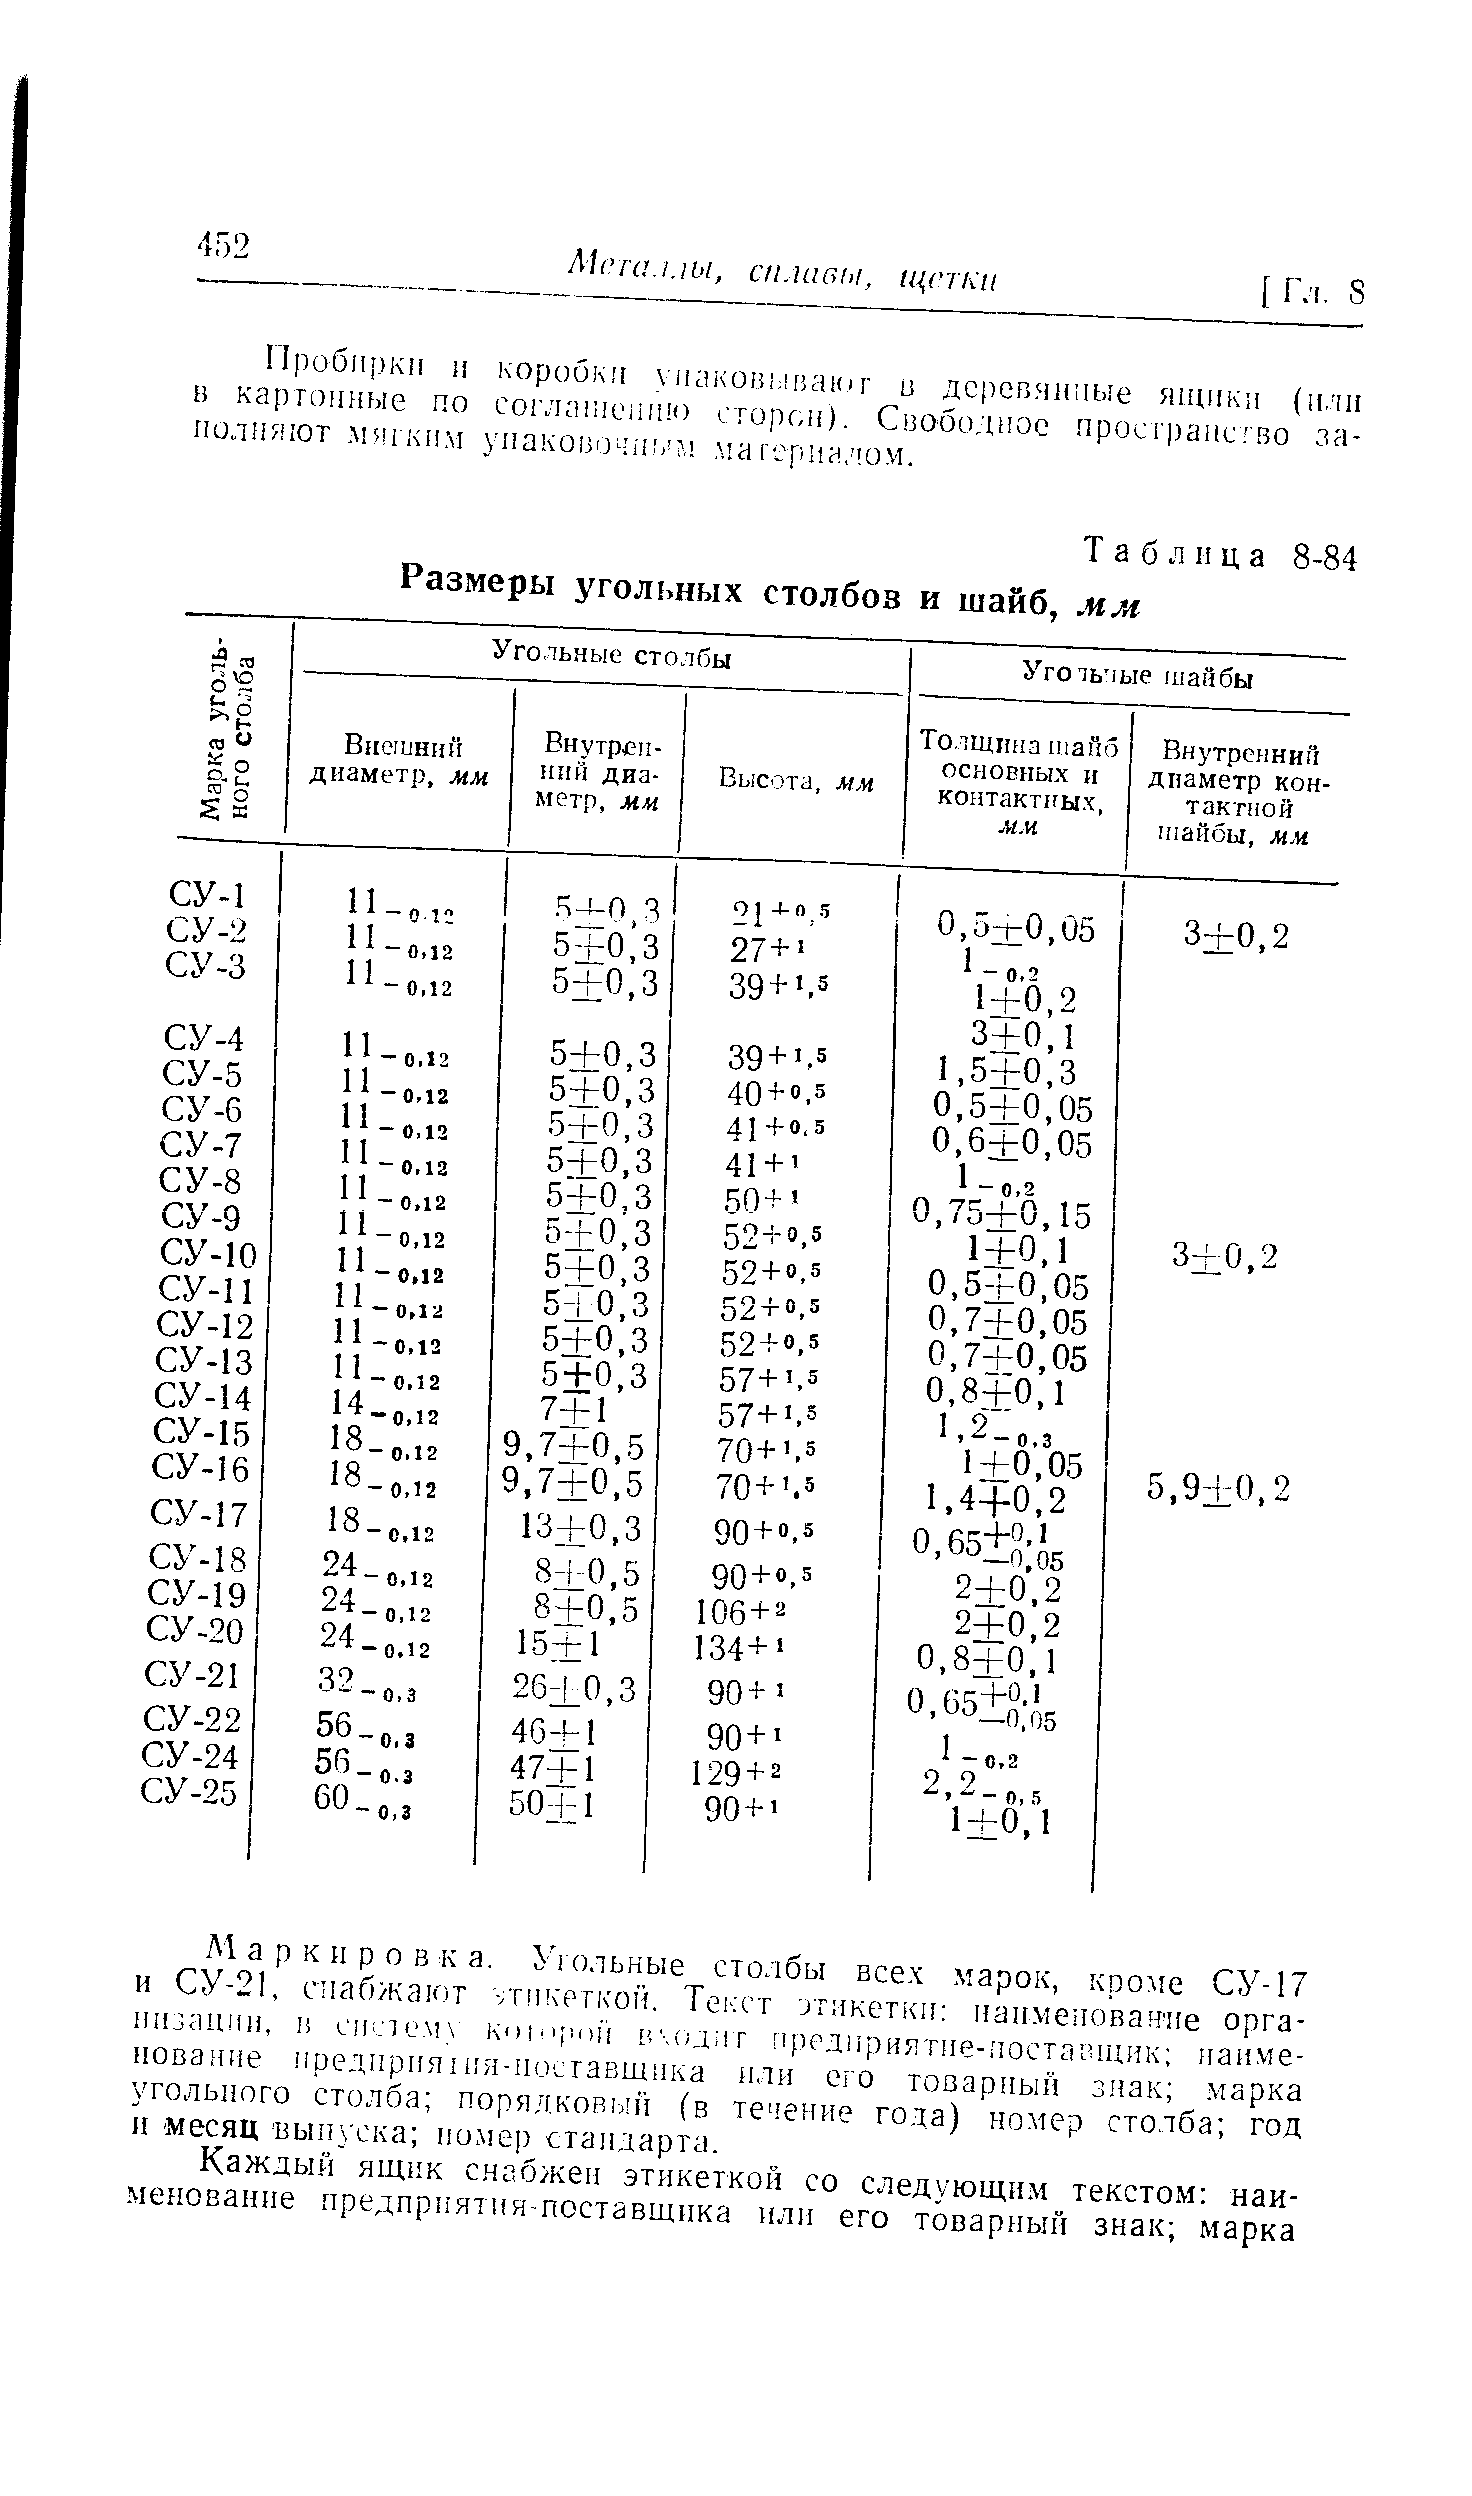 Таблица 8-84 Размеры угольных столбов и шайб, мм
